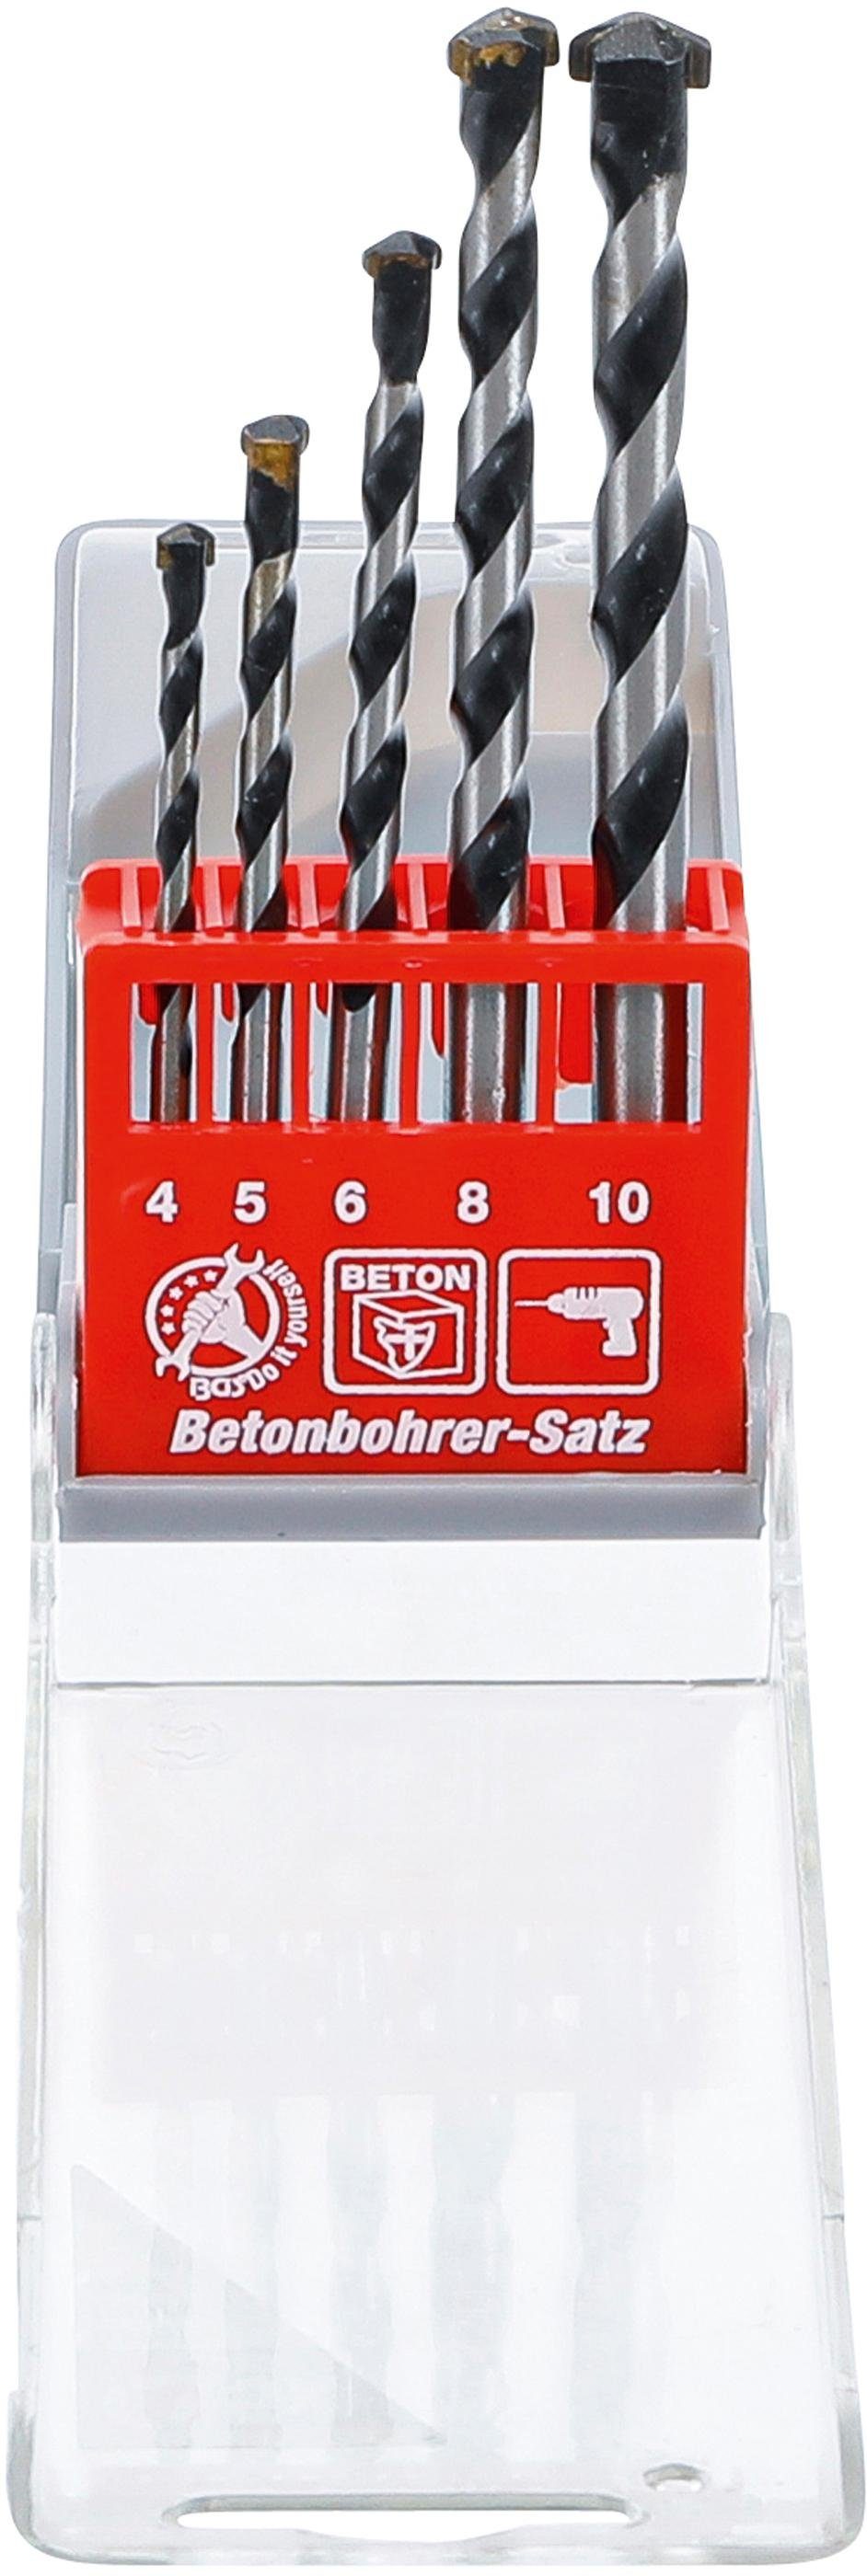 BGS technic Spiralbohrer Betonbohrer-Satz, 4 - 10 mm, 5-tlg.